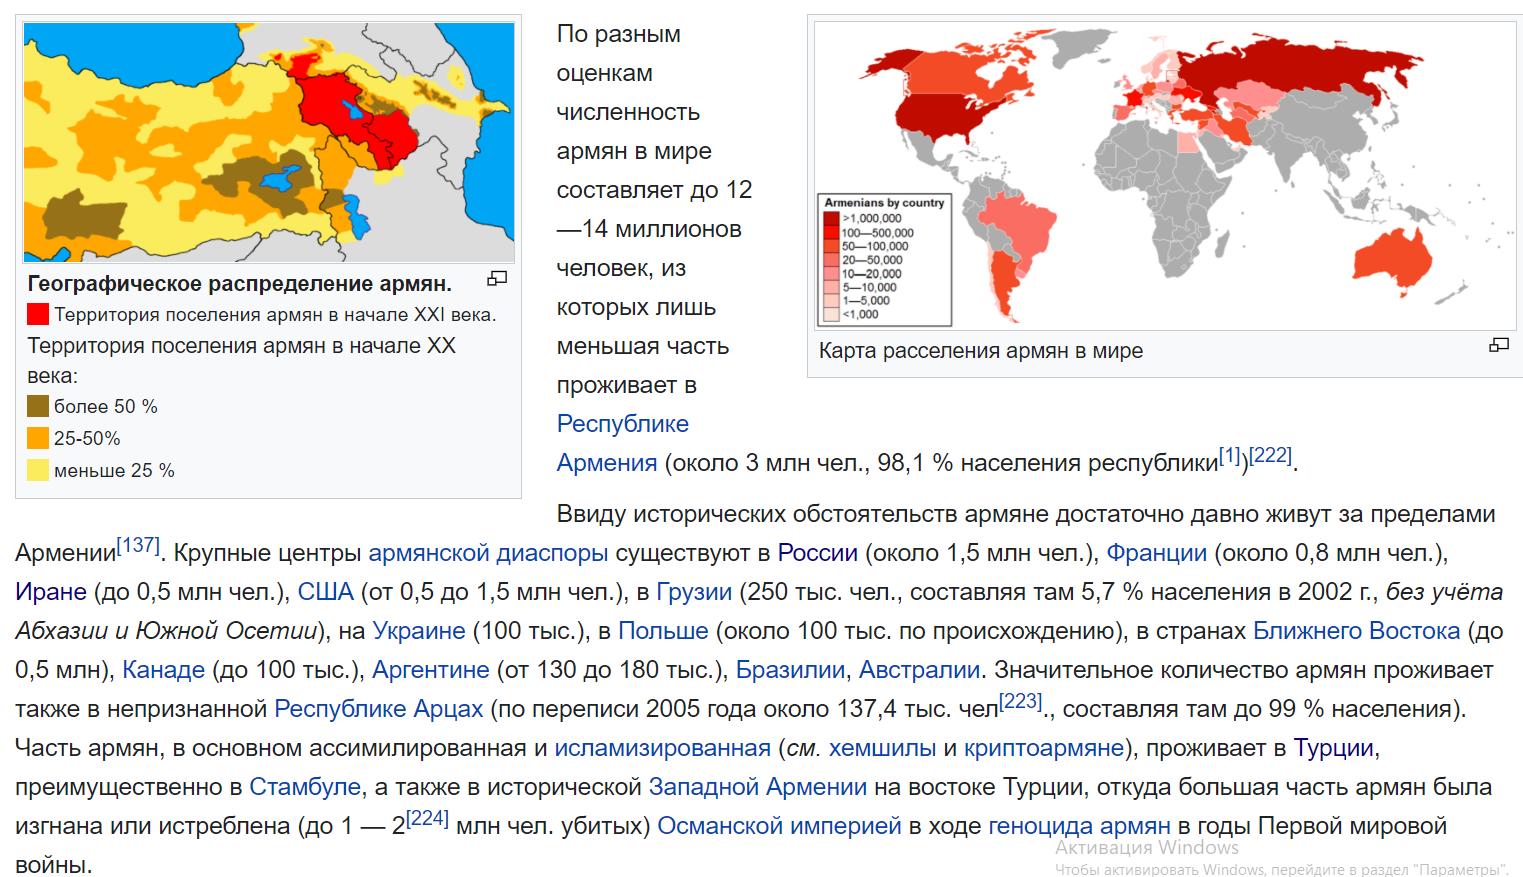 Армяне живущие в америке. Территории на которых проживают армяне. Армяне численность и расселение. Численность армян в мире. Численность населения армян в мире.